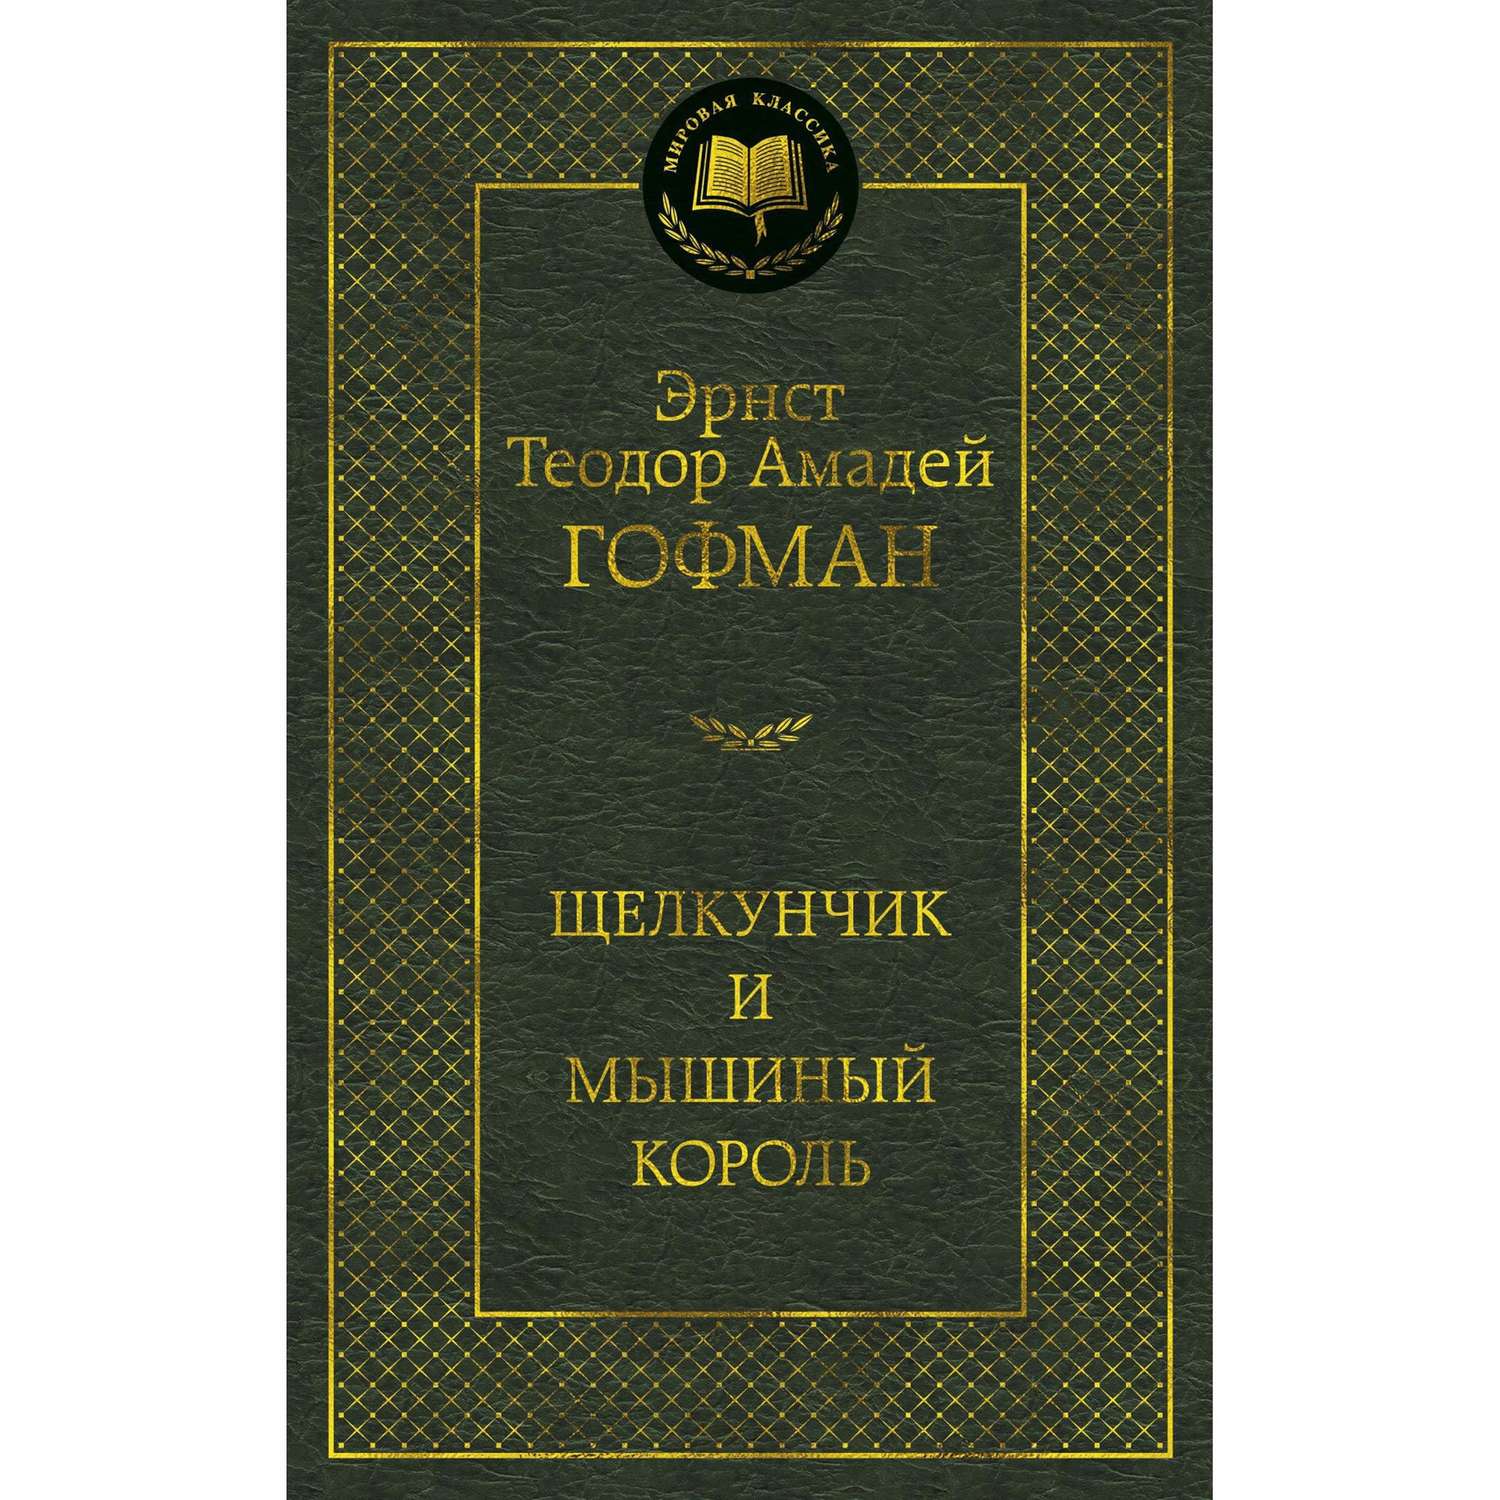 Книга Щелкунчик и мышиный король Мировая классика Эрнст Теодор Амадей Гофман - фото 1